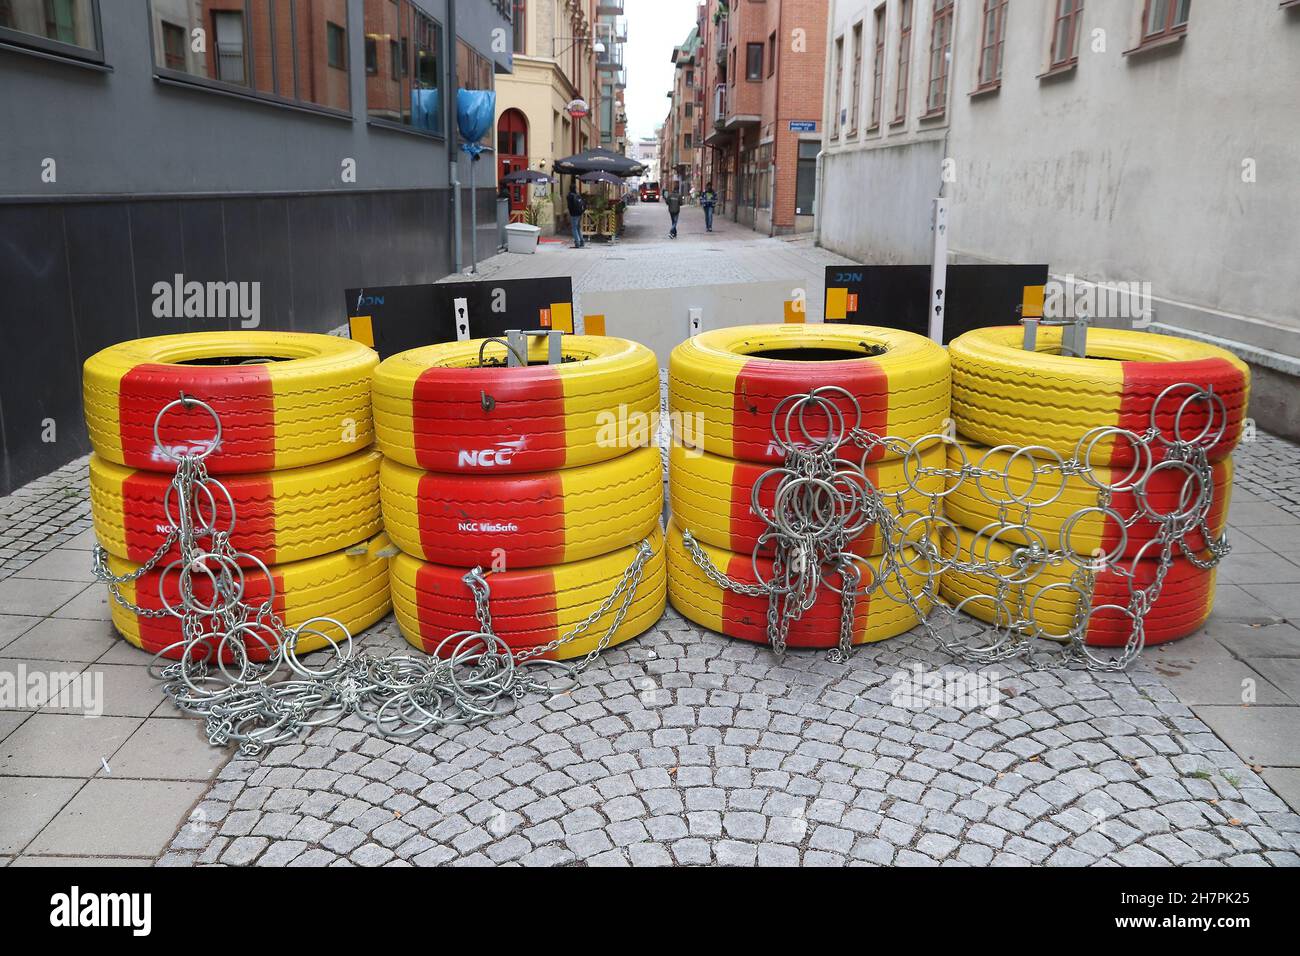 GÖTEBORG, SUÈDE - 27 AOÛT 2018 : barrière spéciale de sécurité pour piétons dans la ville de Göteborg, Suède.Le blocus contre le terrorisme est une réponse à la question du terro Banque D'Images